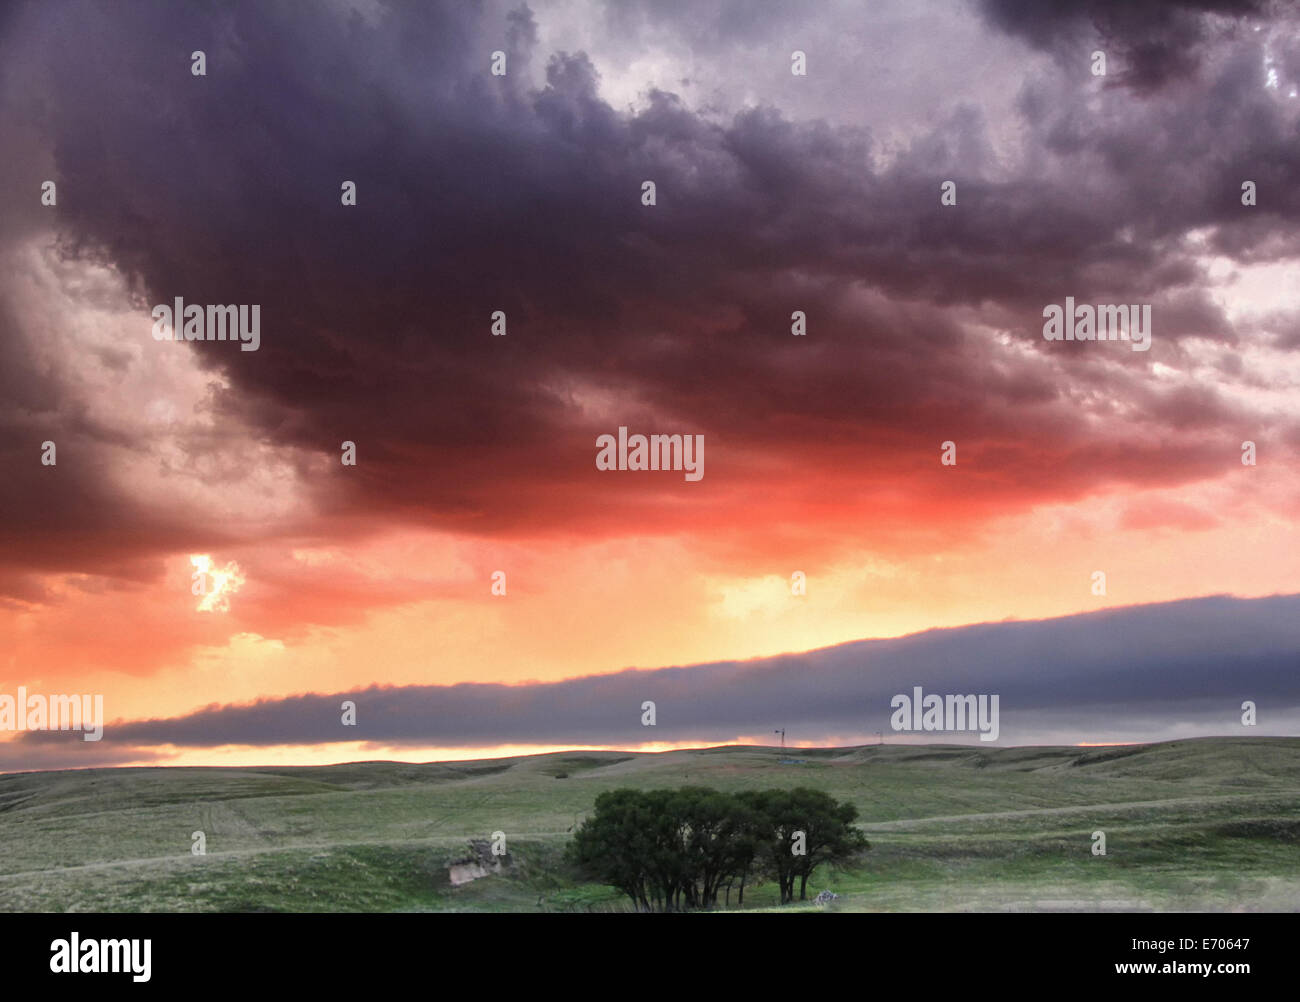 Nuage en rouleau est faible dans la distance avec les couleurs au coucher du soleil sous l'effet de la convection tempête, Lexington, Kentucky, USA Banque D'Images